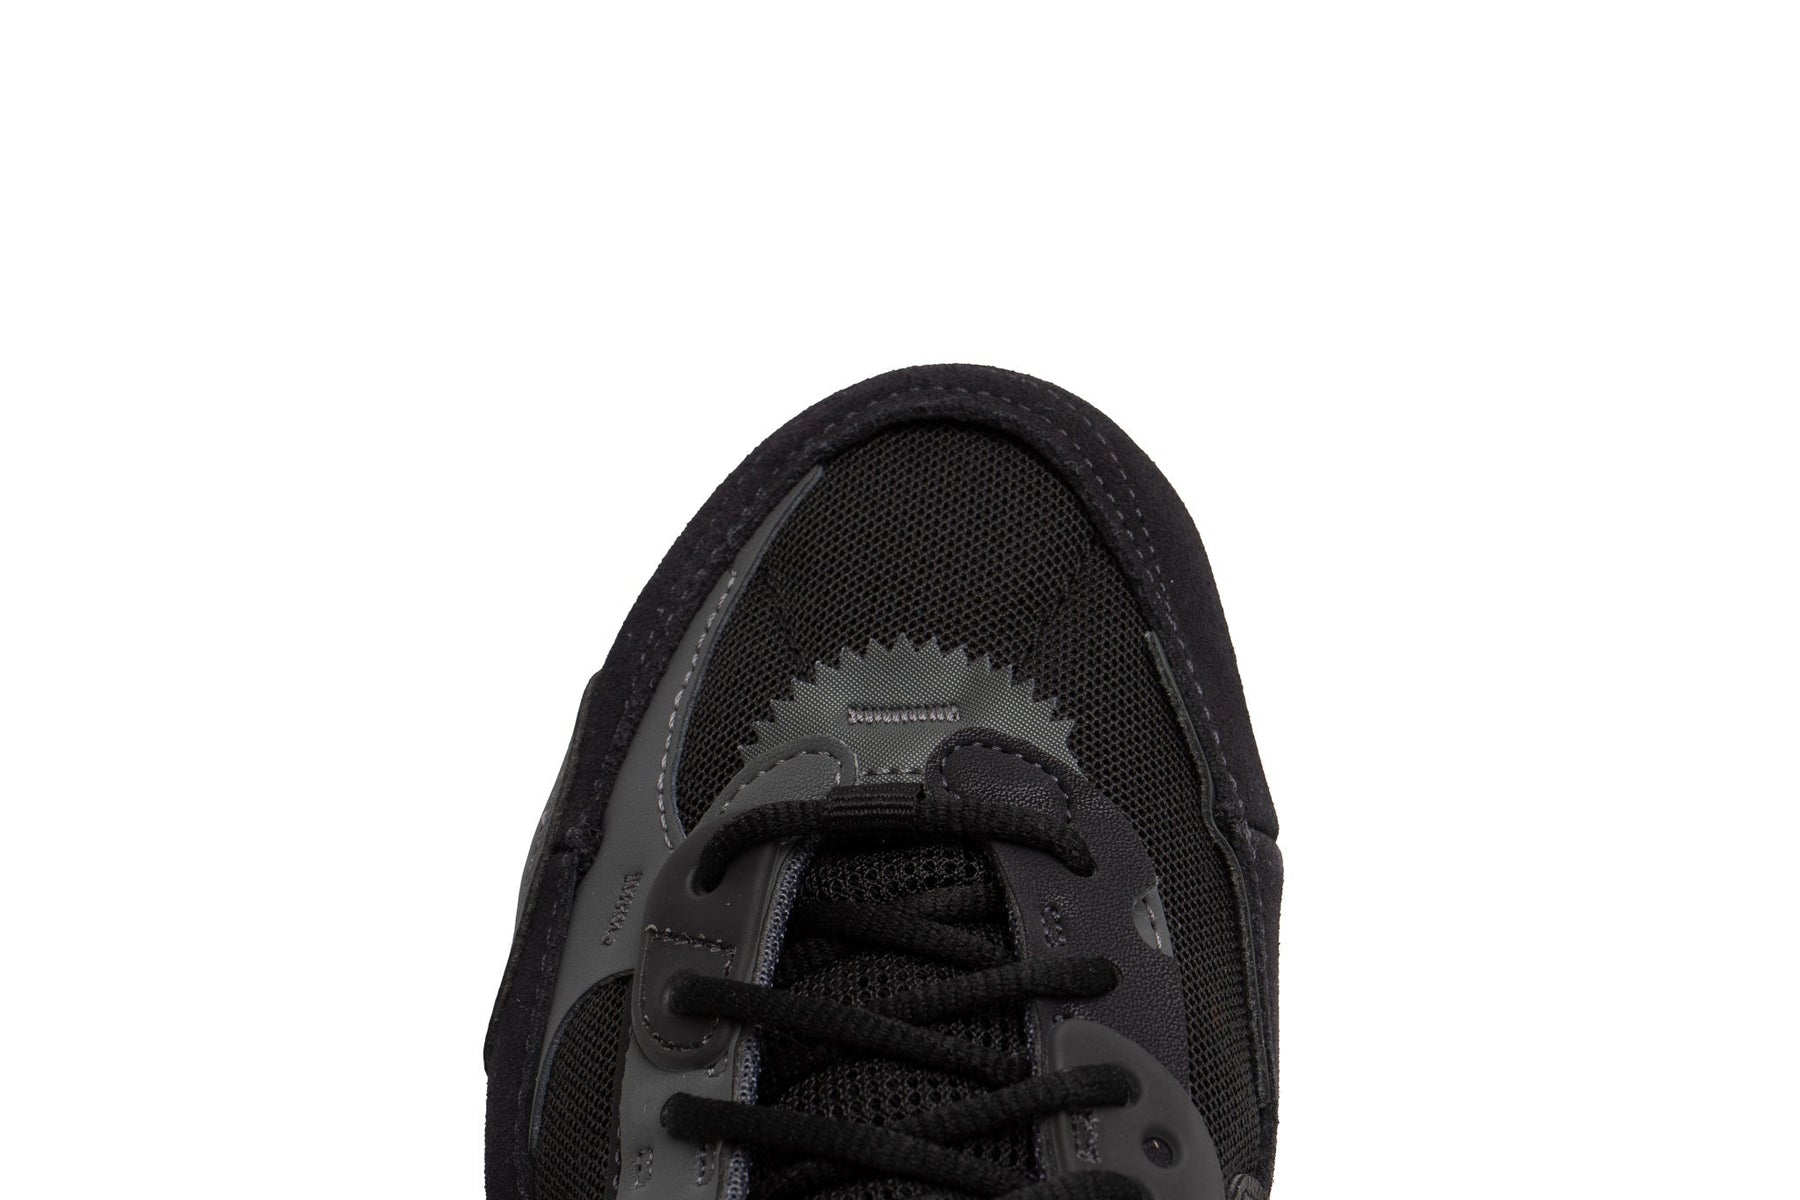 WMNS Nike Air Max 90 Futura "Black"